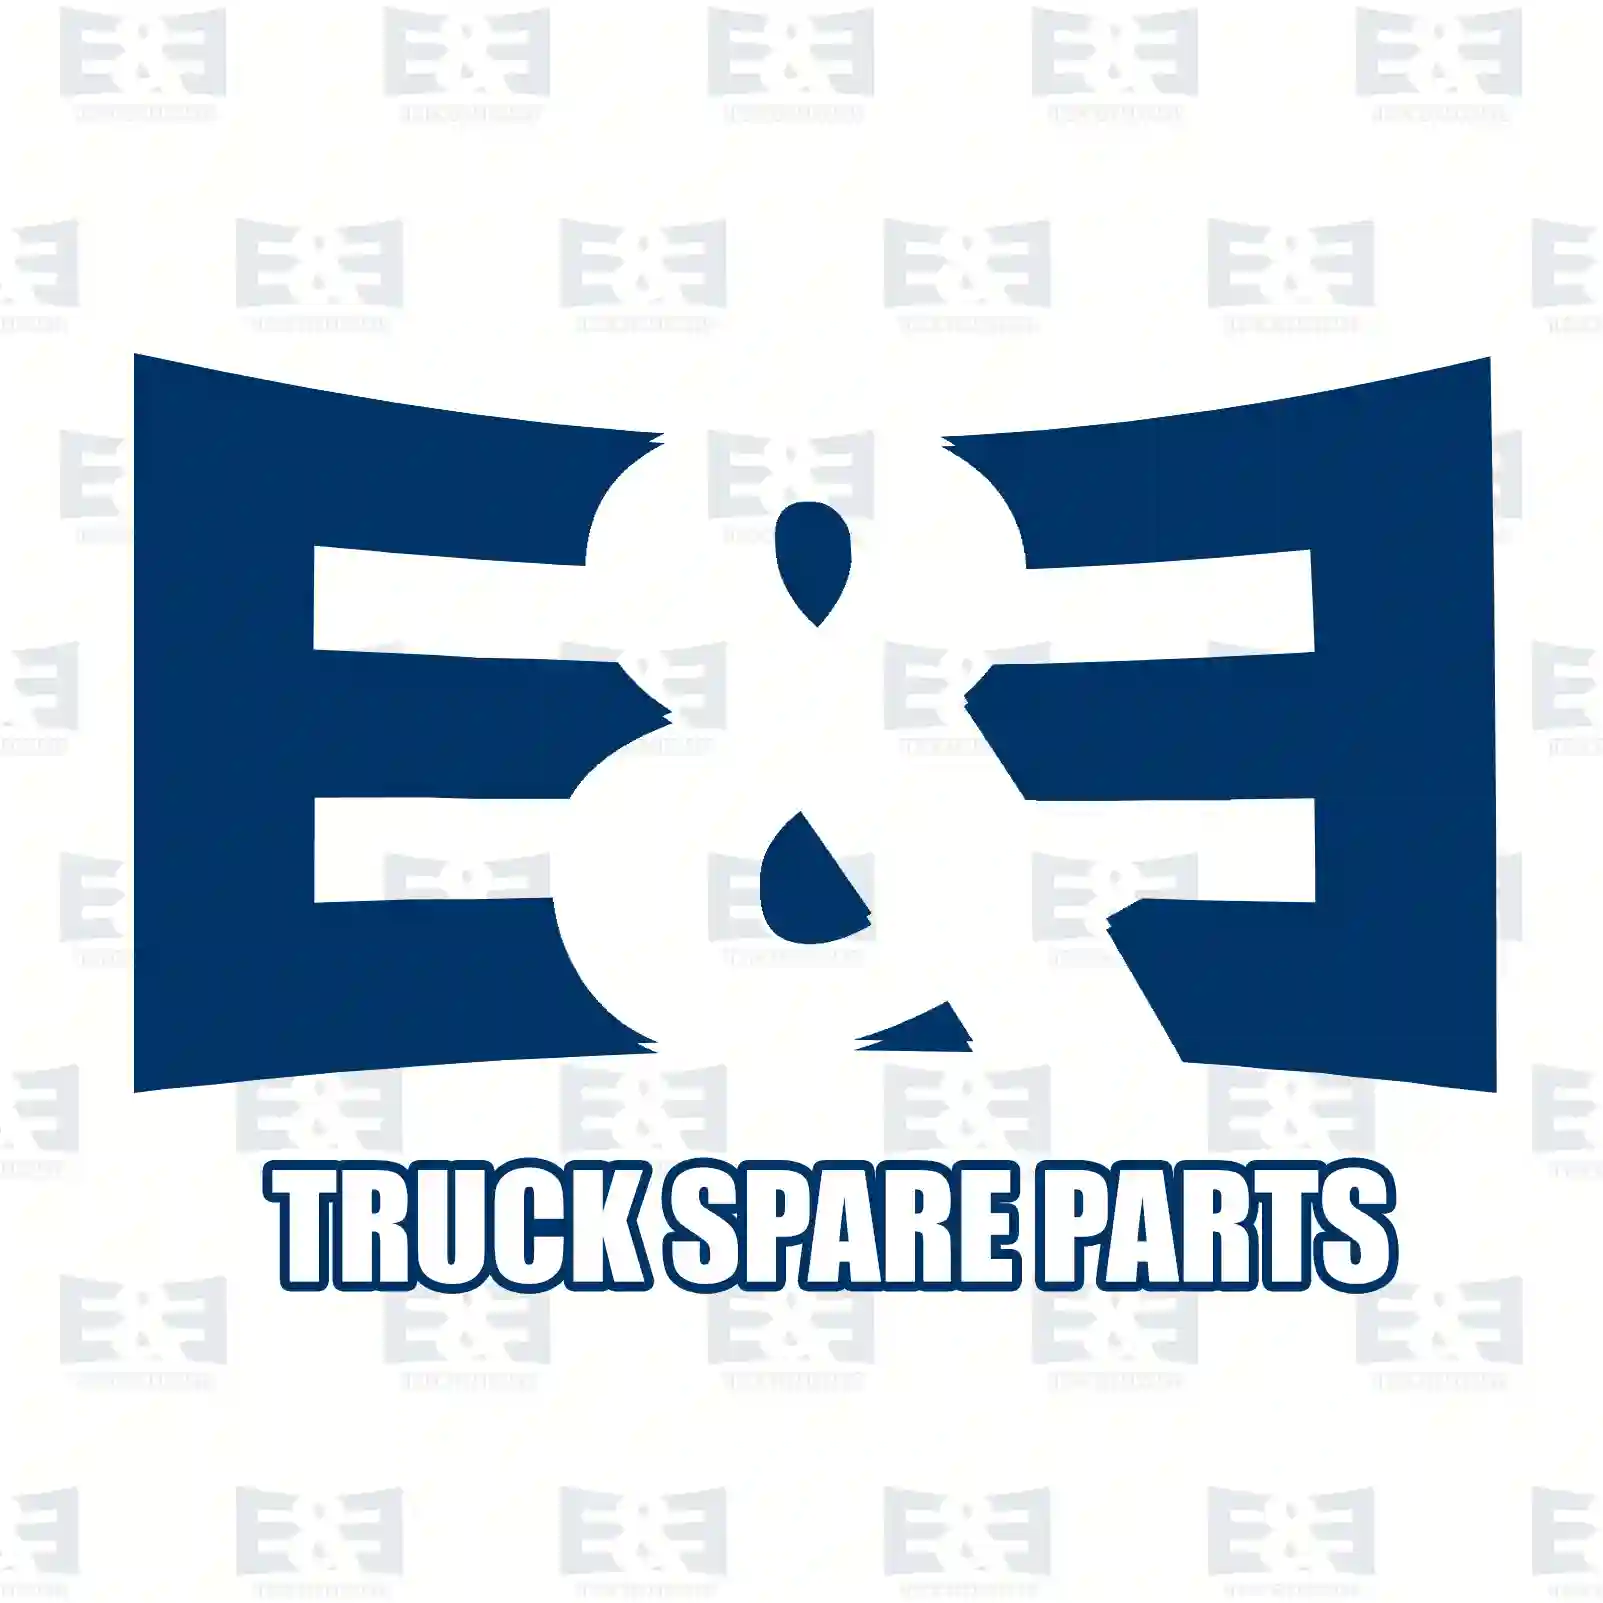 Clutch kit, 2E2288975, 81300050005, 813 ||  2E2288975 E&E Truck Spare Parts | Truck Spare Parts, Auotomotive Spare Parts Clutch kit, 2E2288975, 81300050005, 813 ||  2E2288975 E&E Truck Spare Parts | Truck Spare Parts, Auotomotive Spare Parts